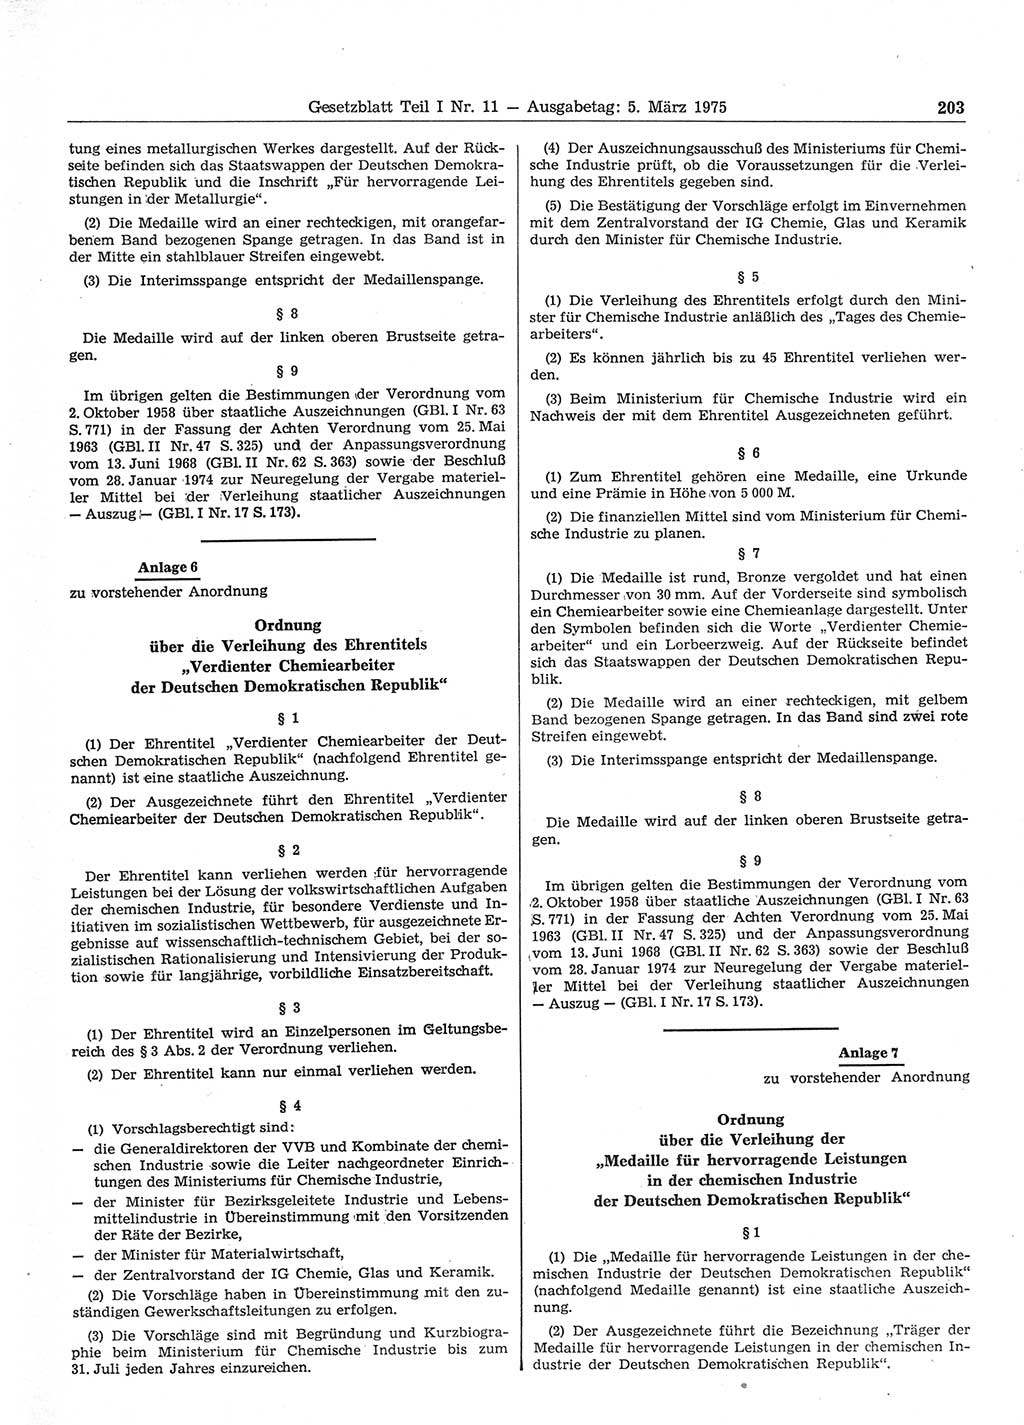 Gesetzblatt (GBl.) der Deutschen Demokratischen Republik (DDR) Teil Ⅰ 1975, Seite 203 (GBl. DDR Ⅰ 1975, S. 203)